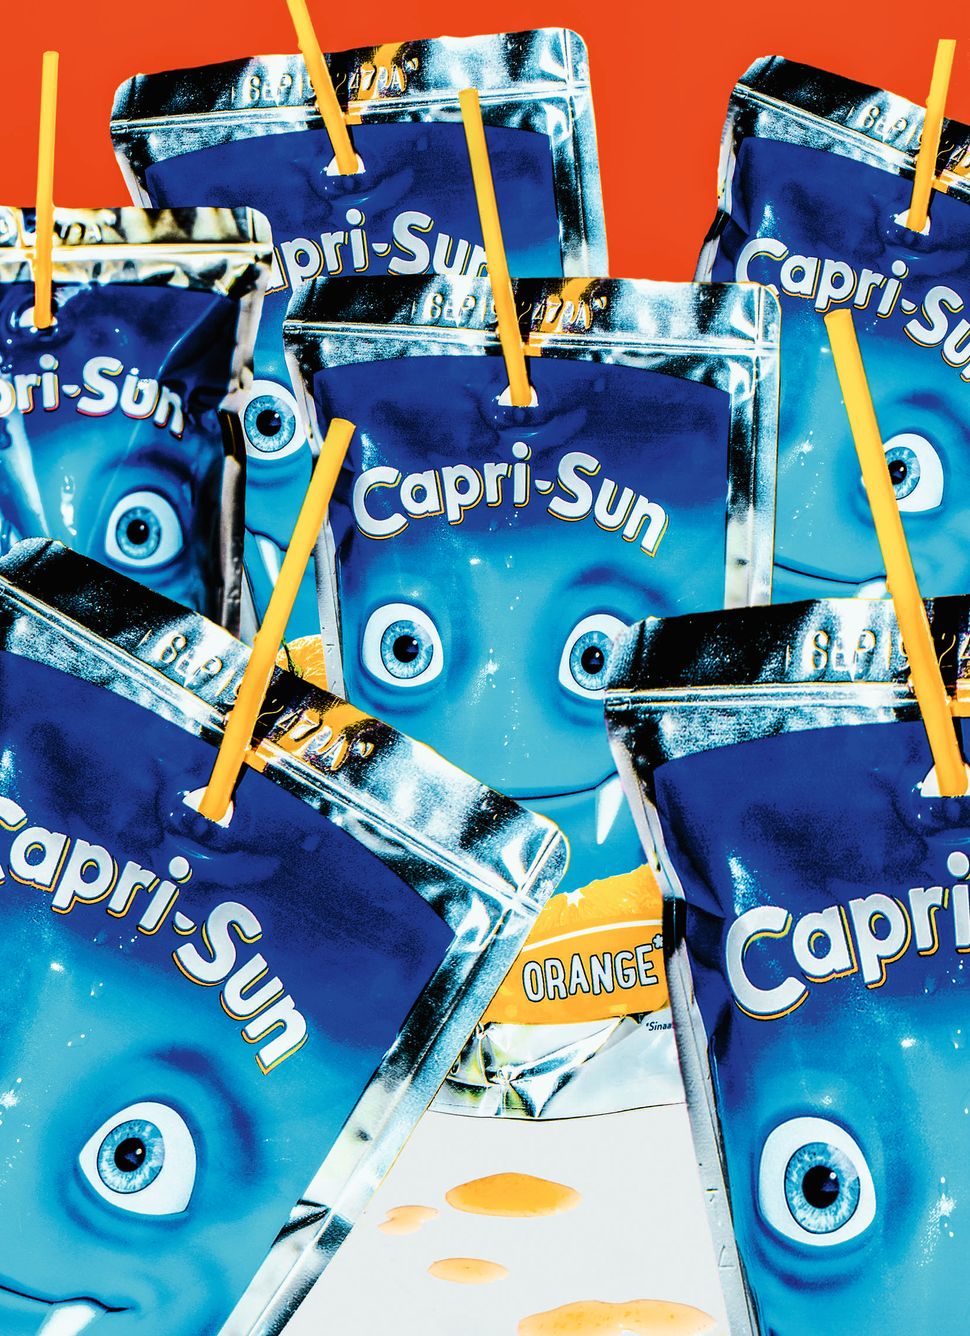 Capri-Sonne ist wie eine Erziehungspause - SZ Magazin